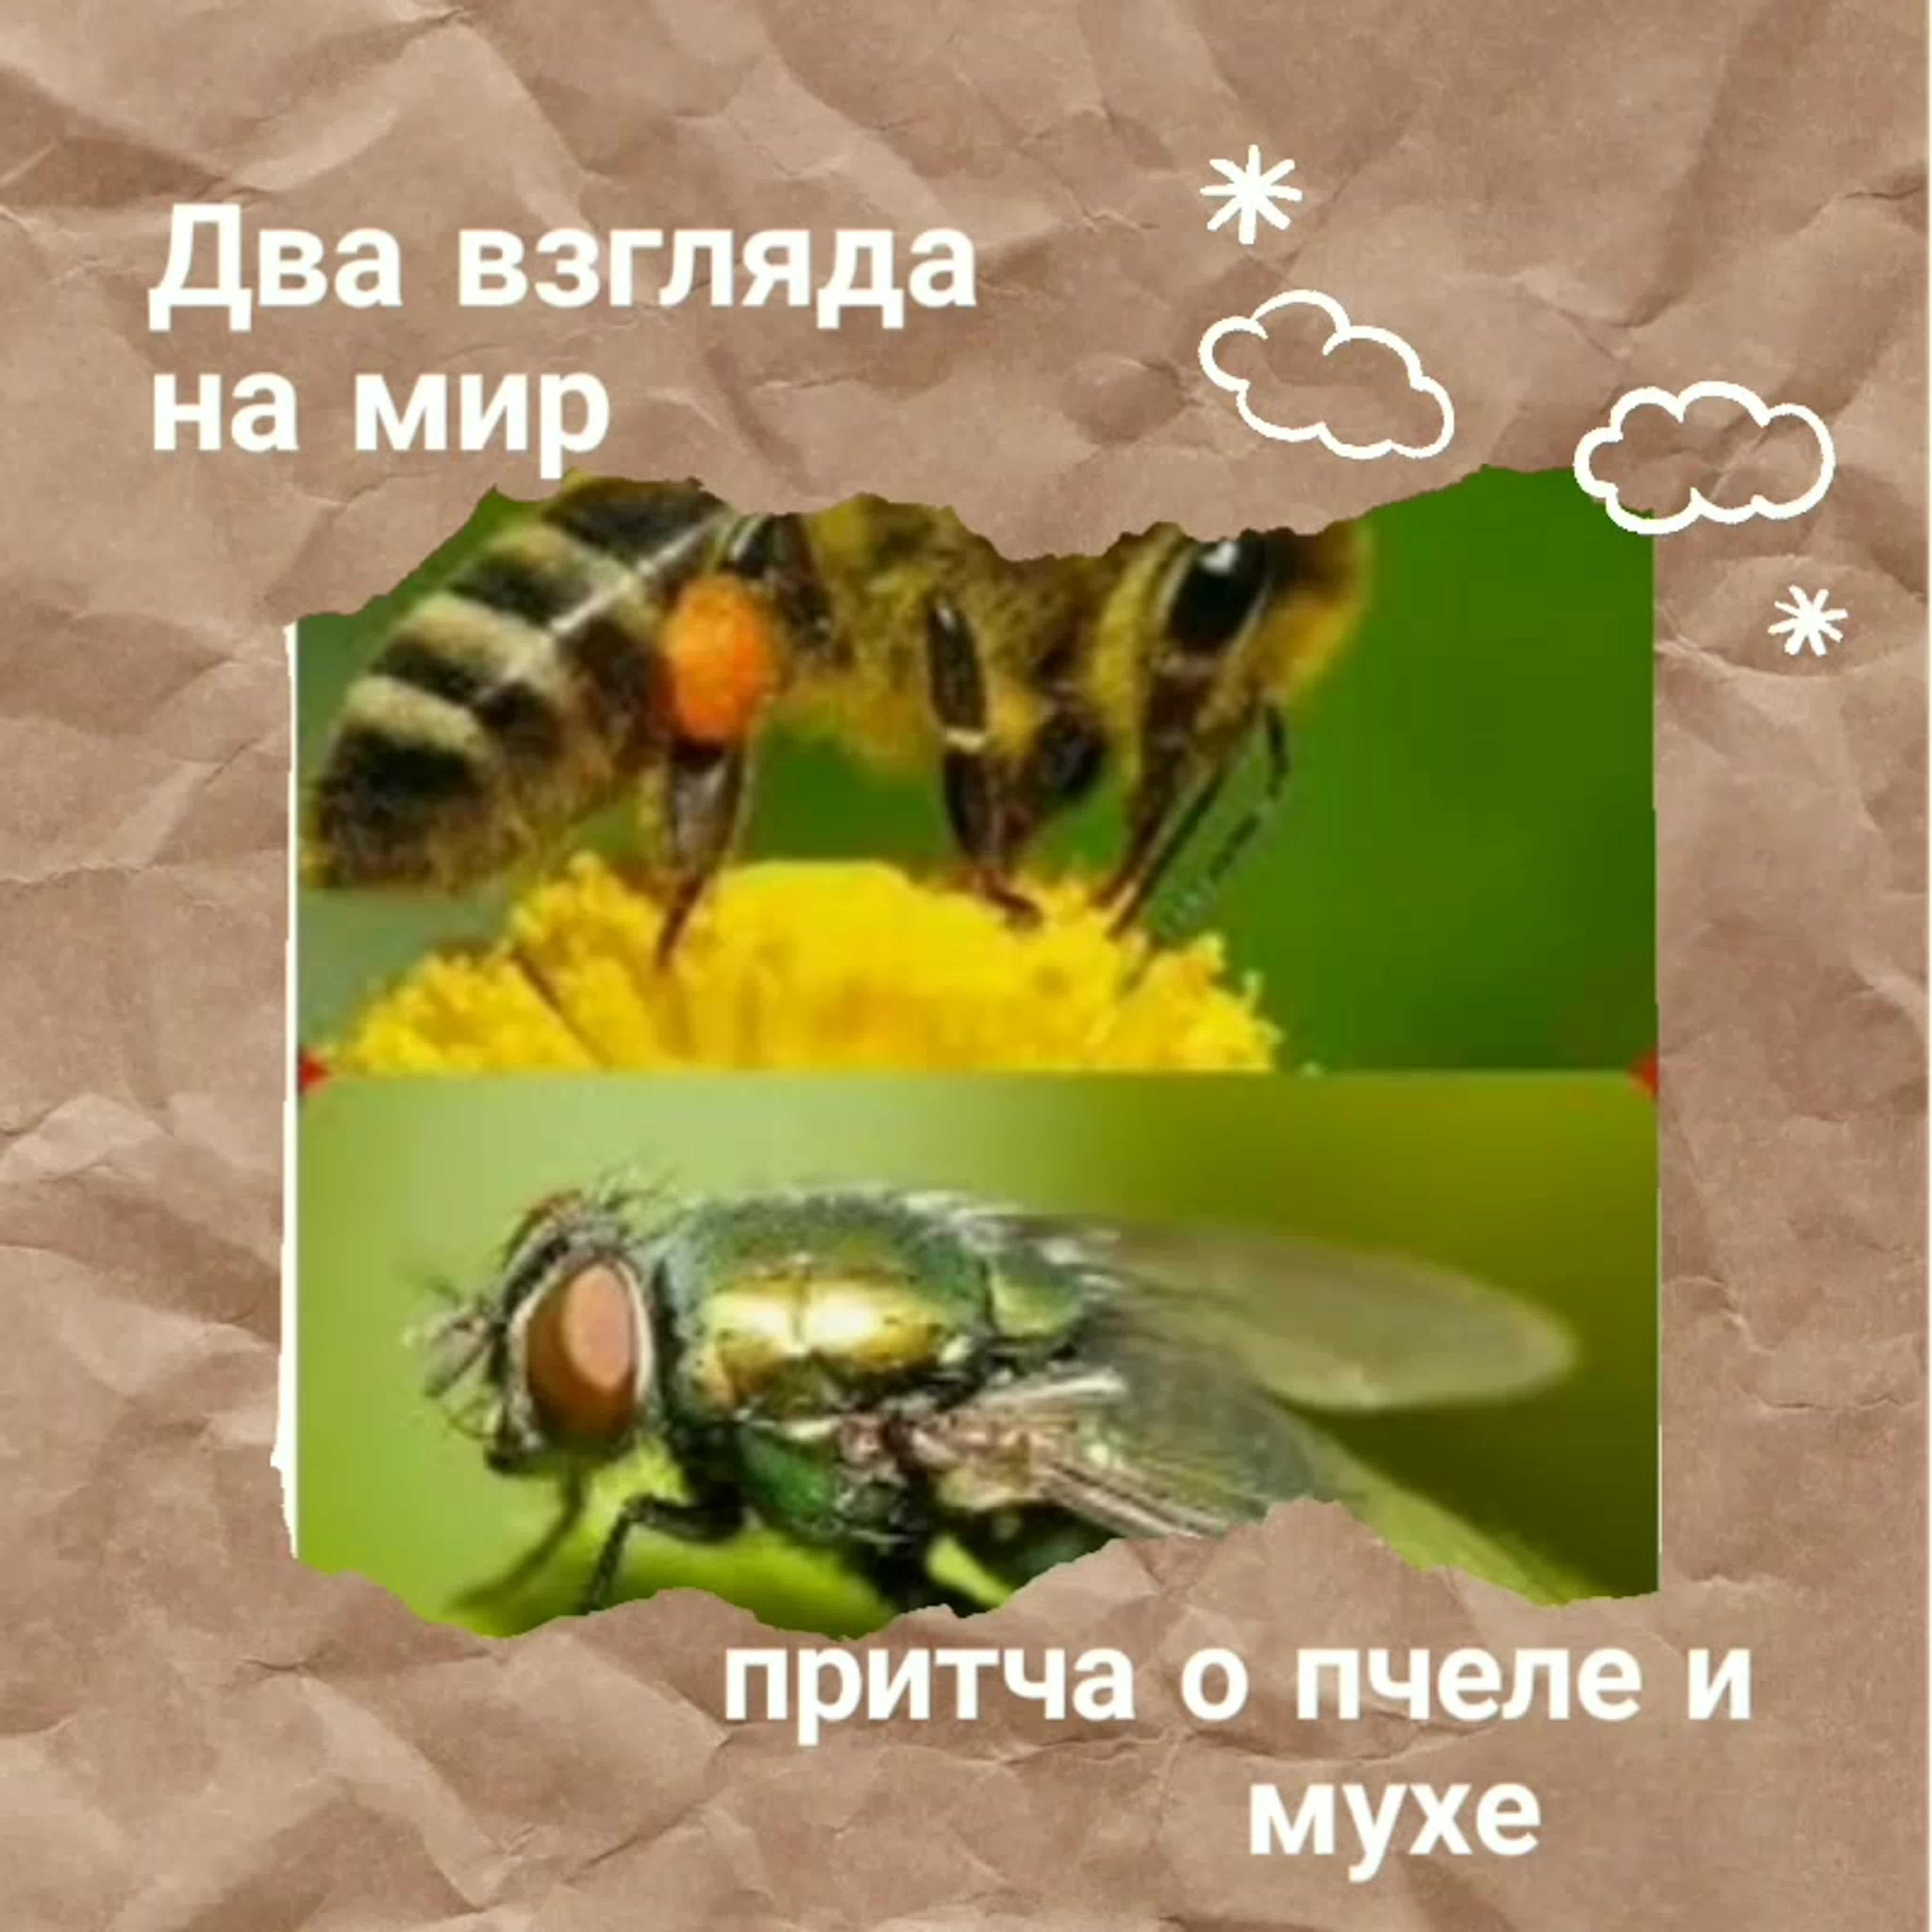 Притча про мух. Два взгляда на мир. Притча о пчеле и мухе. Два взгляда на мир Муха и пчела. Взгляд мухи и пчелы.